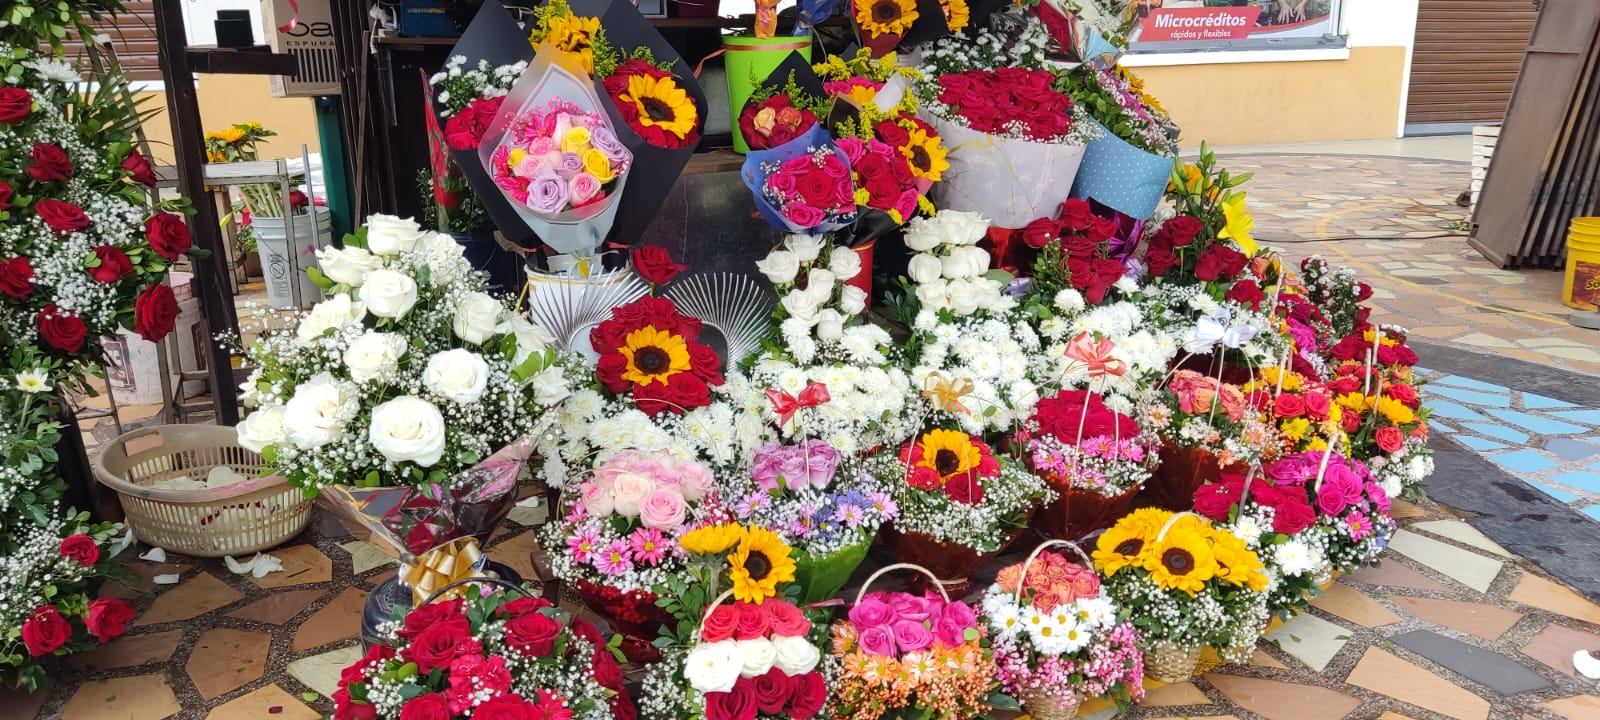 ELECCIÓN. Varias opciones de flores y rosas tienen los lojanos a la hora de adquirir para llevar a sus difuntos.